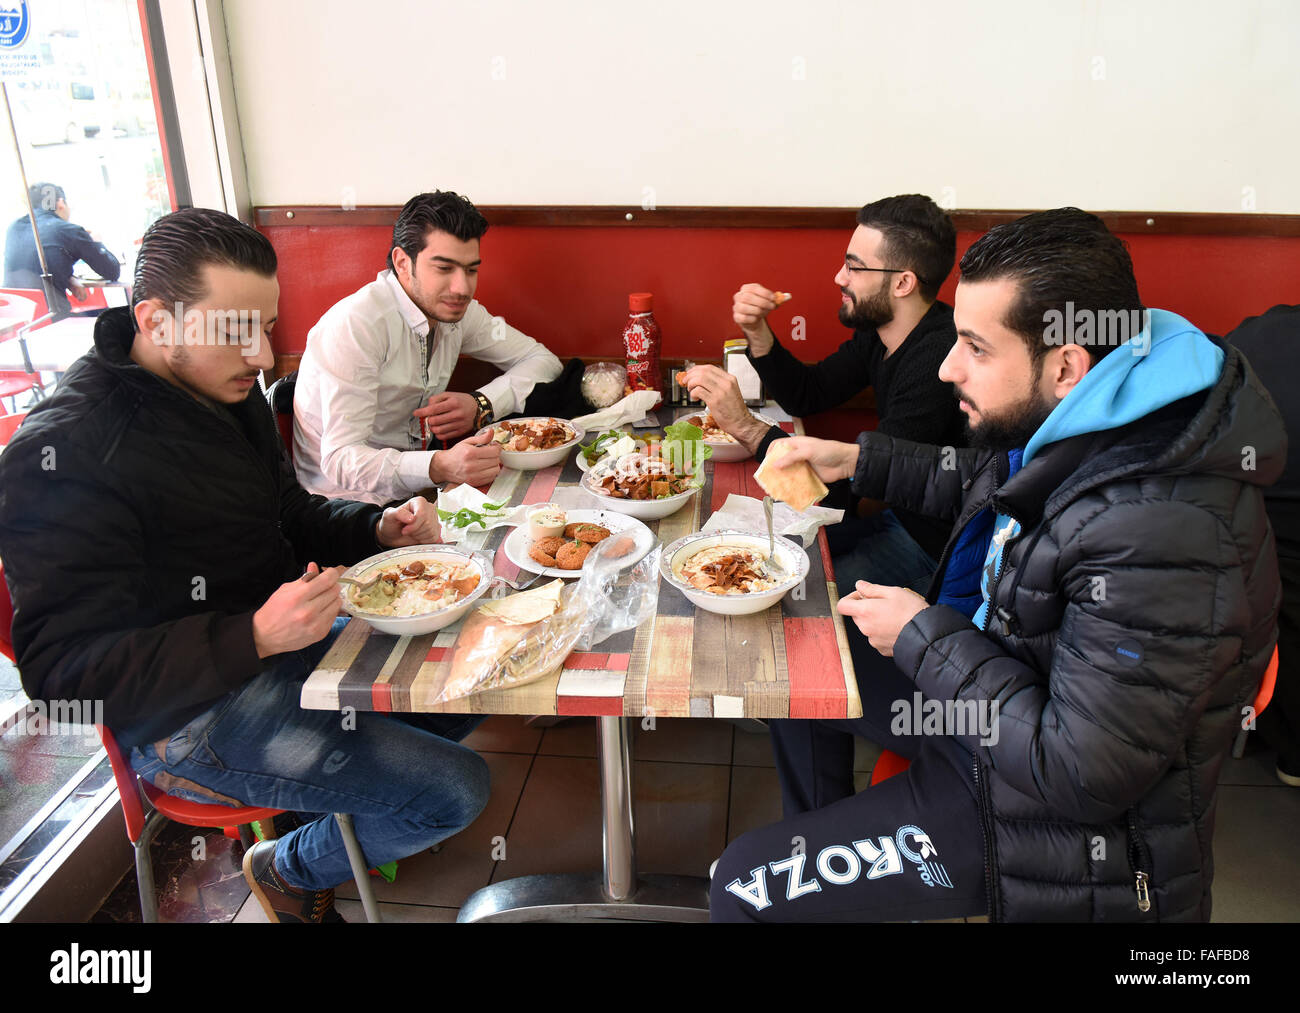 (151229)--ISTANBUL, 29. Dezember 2015 (Xinhua)--Menschen Essen in einem arabischen Restaurant im Stadtteil Fatih, Istanbul, Türkei, am 22. Dezember 2015. Auf den ersten Blick scheint Istanbuls belebten Fındıklı Straße im Stadtteil Fatih nicht anders als andere in ähnlichen Mittelklasse-Nachbarschaften. Aber mit einem tieferen Blick konnte man feststellen, dass Kinder hier tatsächlich auf Arabisch betteln. Restaurant und Shop Zeichen, Preisschilder und sogar anzeigen außerhalb der Makler-Büros befinden sich in Arabisch. Syrische Schutzhütten, auf der Flucht ihre vom Krieg zerrissenen Land mit bitteren Erinnerungen an Krieg und verlorenen lieben, haben versucht, hier zu beginnen. T Stockfoto